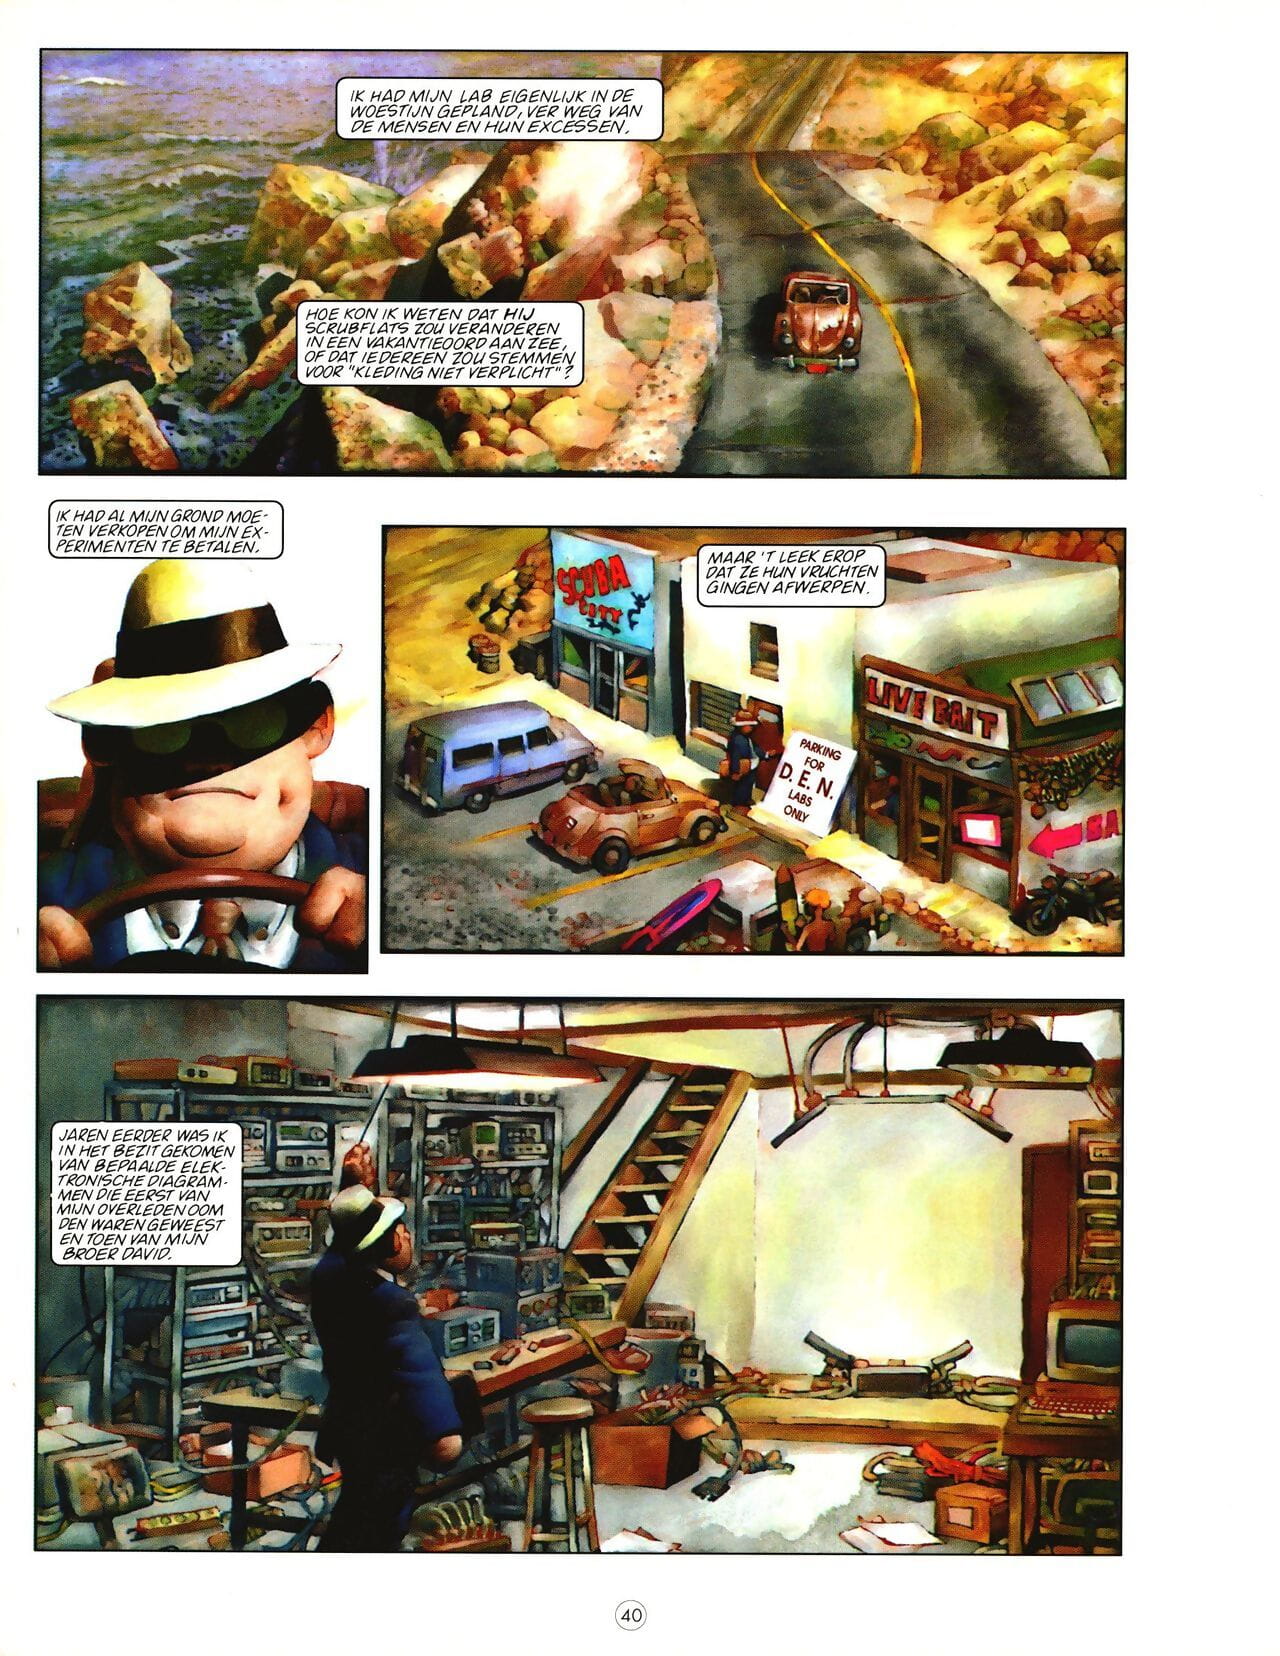 阁楼 漫画 杂志 01 一部分 2 page 1